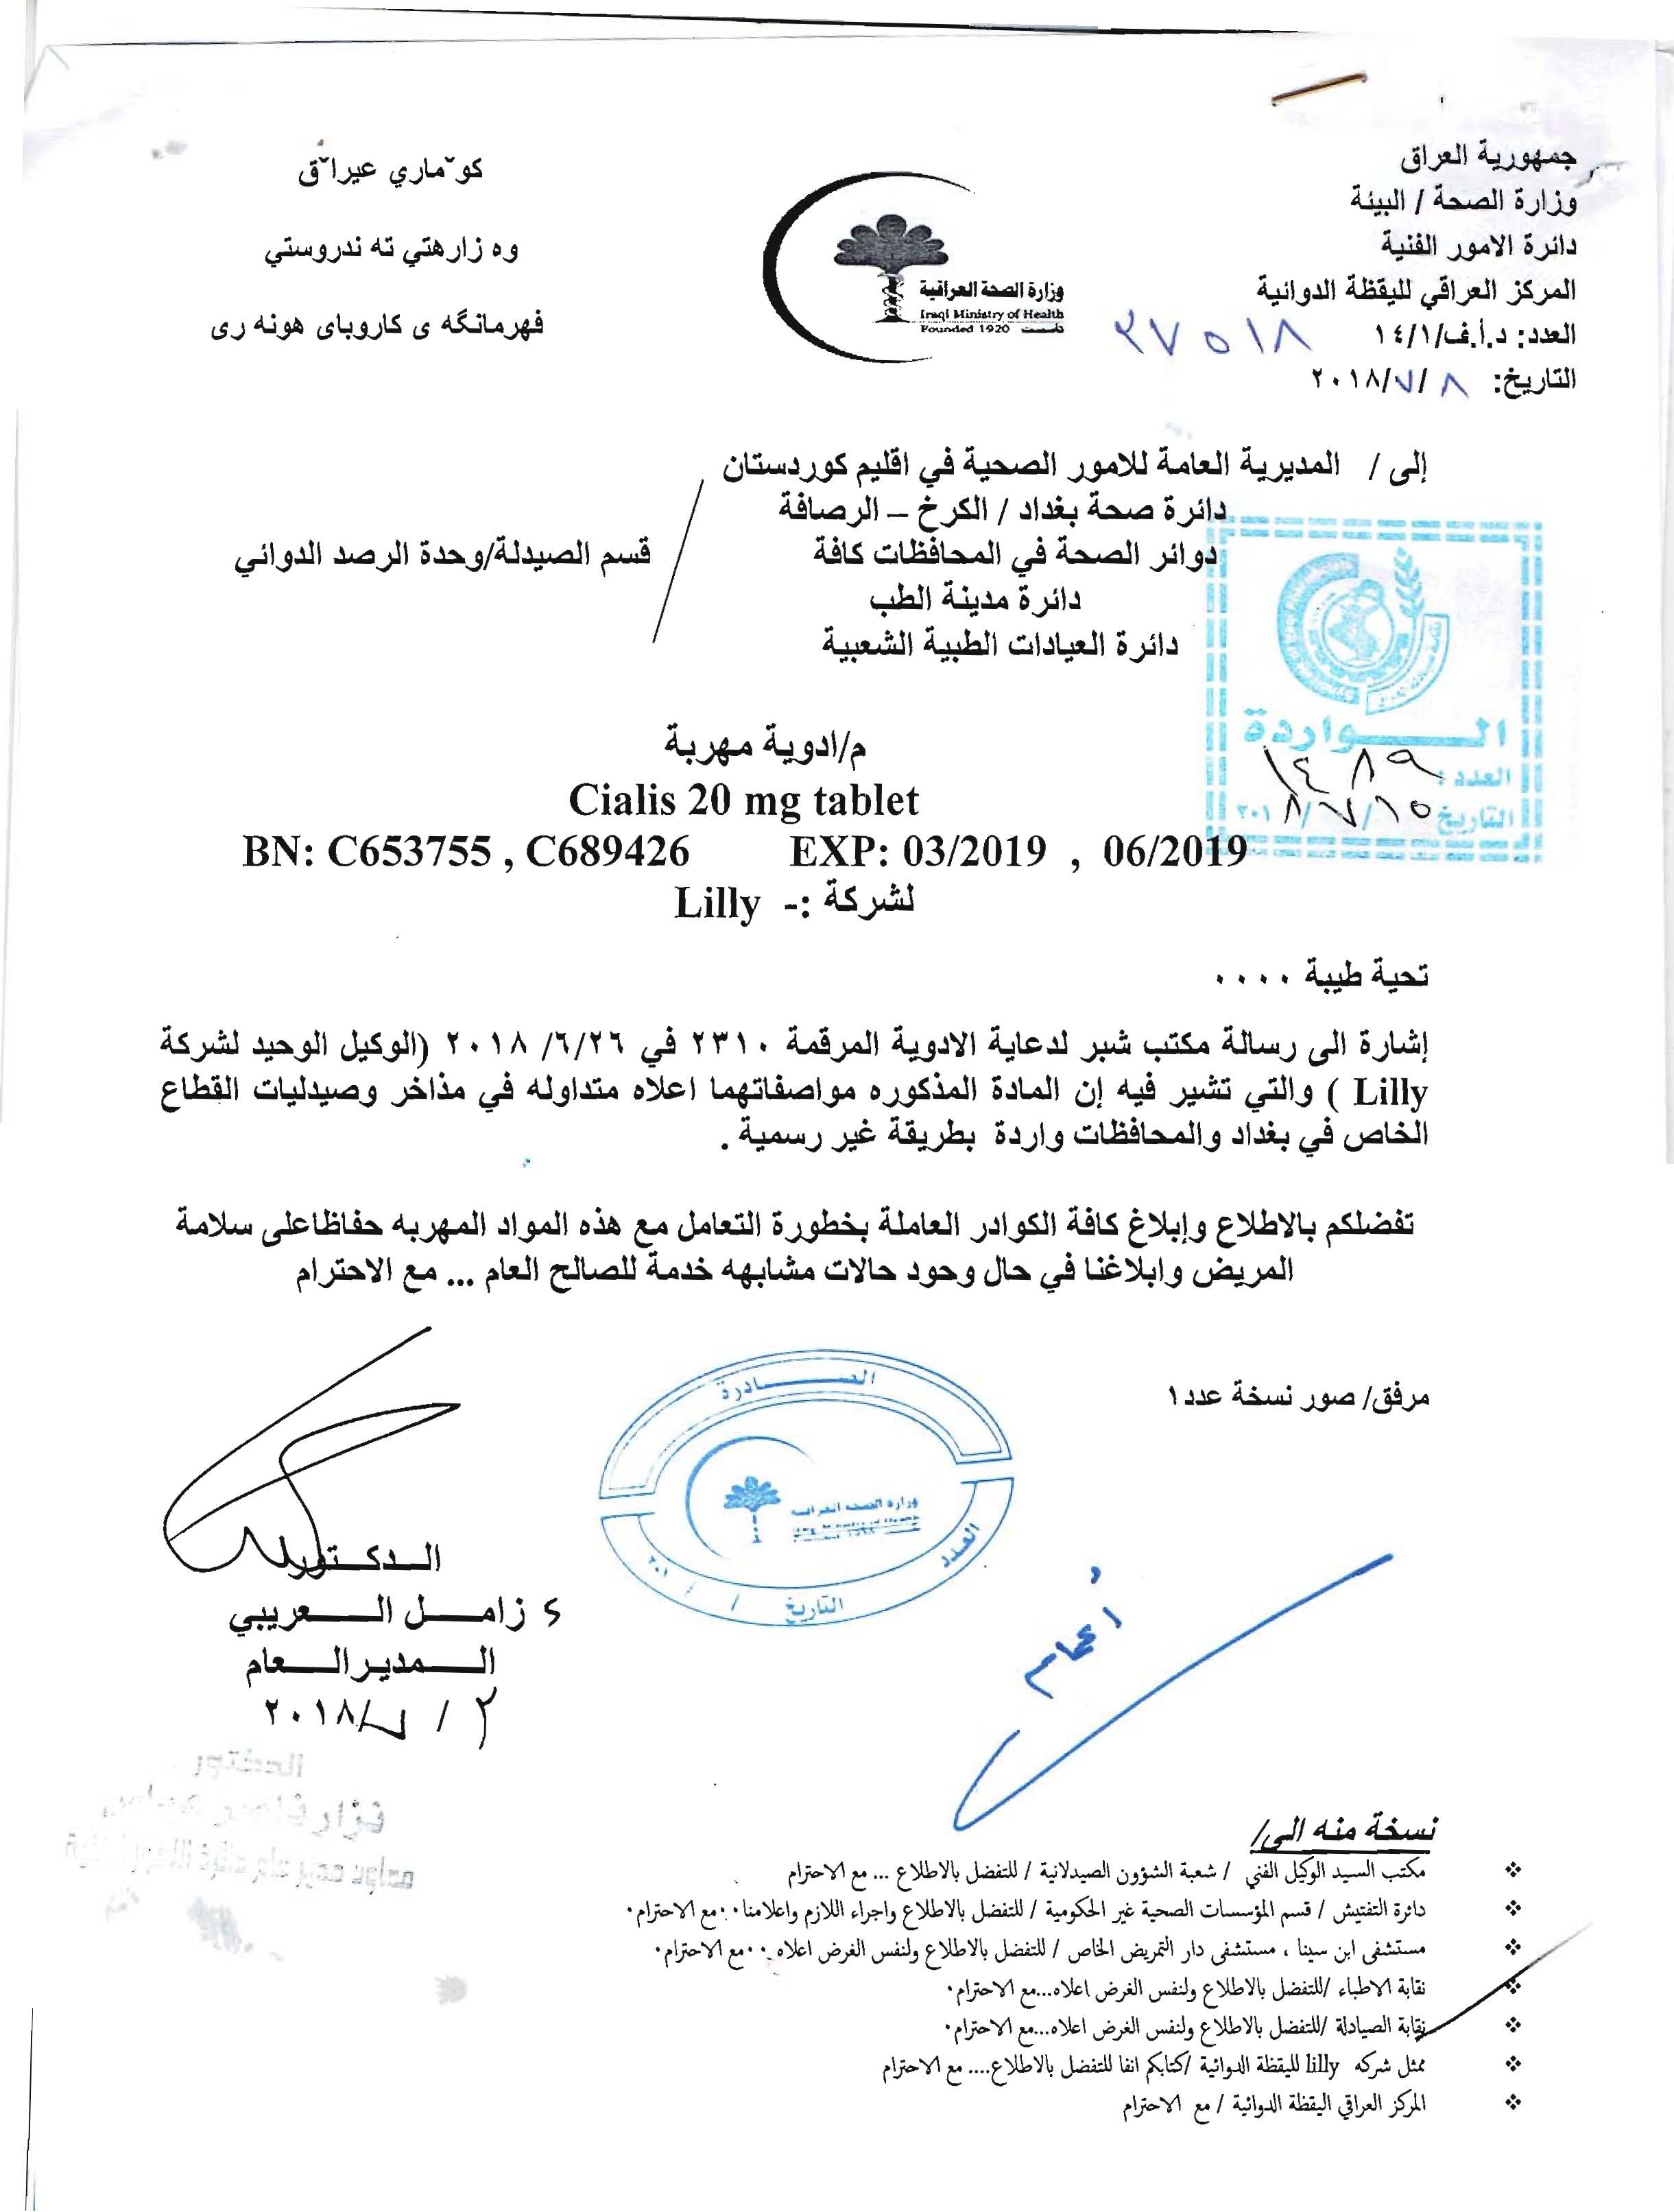 تعميم من وزارة الصحة بخصوص ادوية مهربة نقابة صيادلة العراق